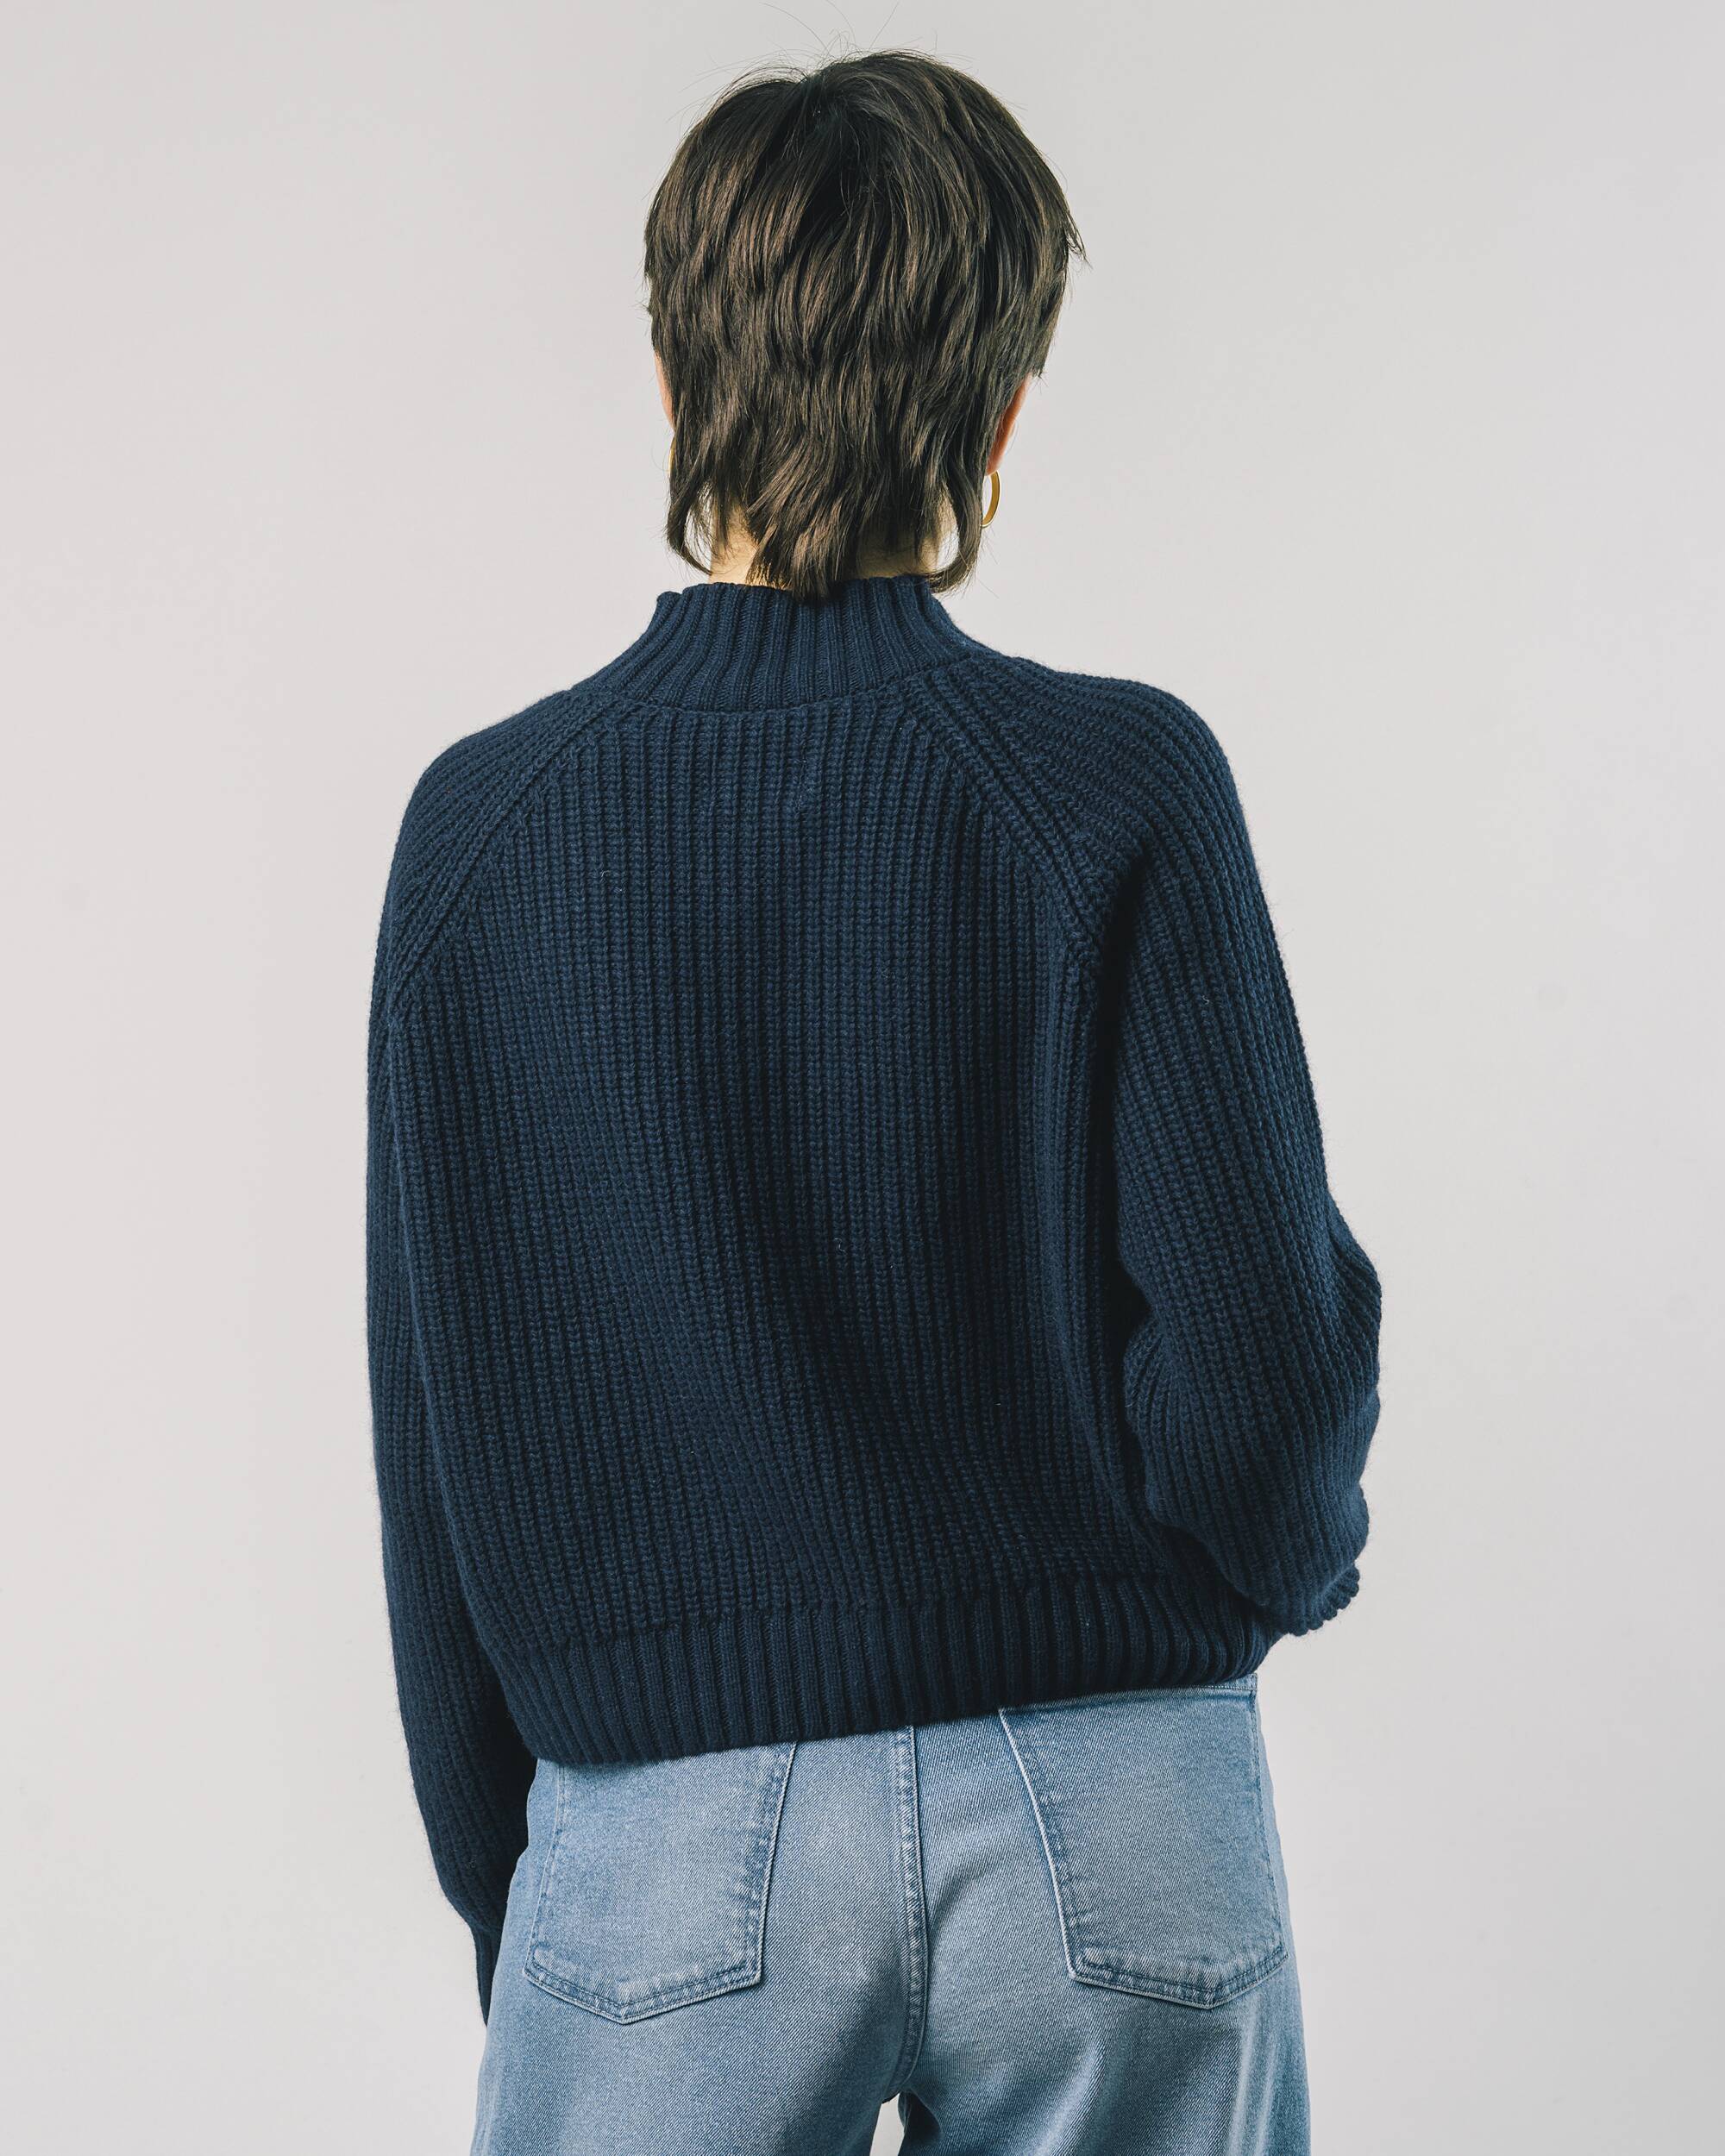 Kurzgeschnittener Sweater "Pfingstrose" in navy - blau mit hohem Kragen aus recyceltem Cashmere und recycelter Wolle von Brava Fabrics